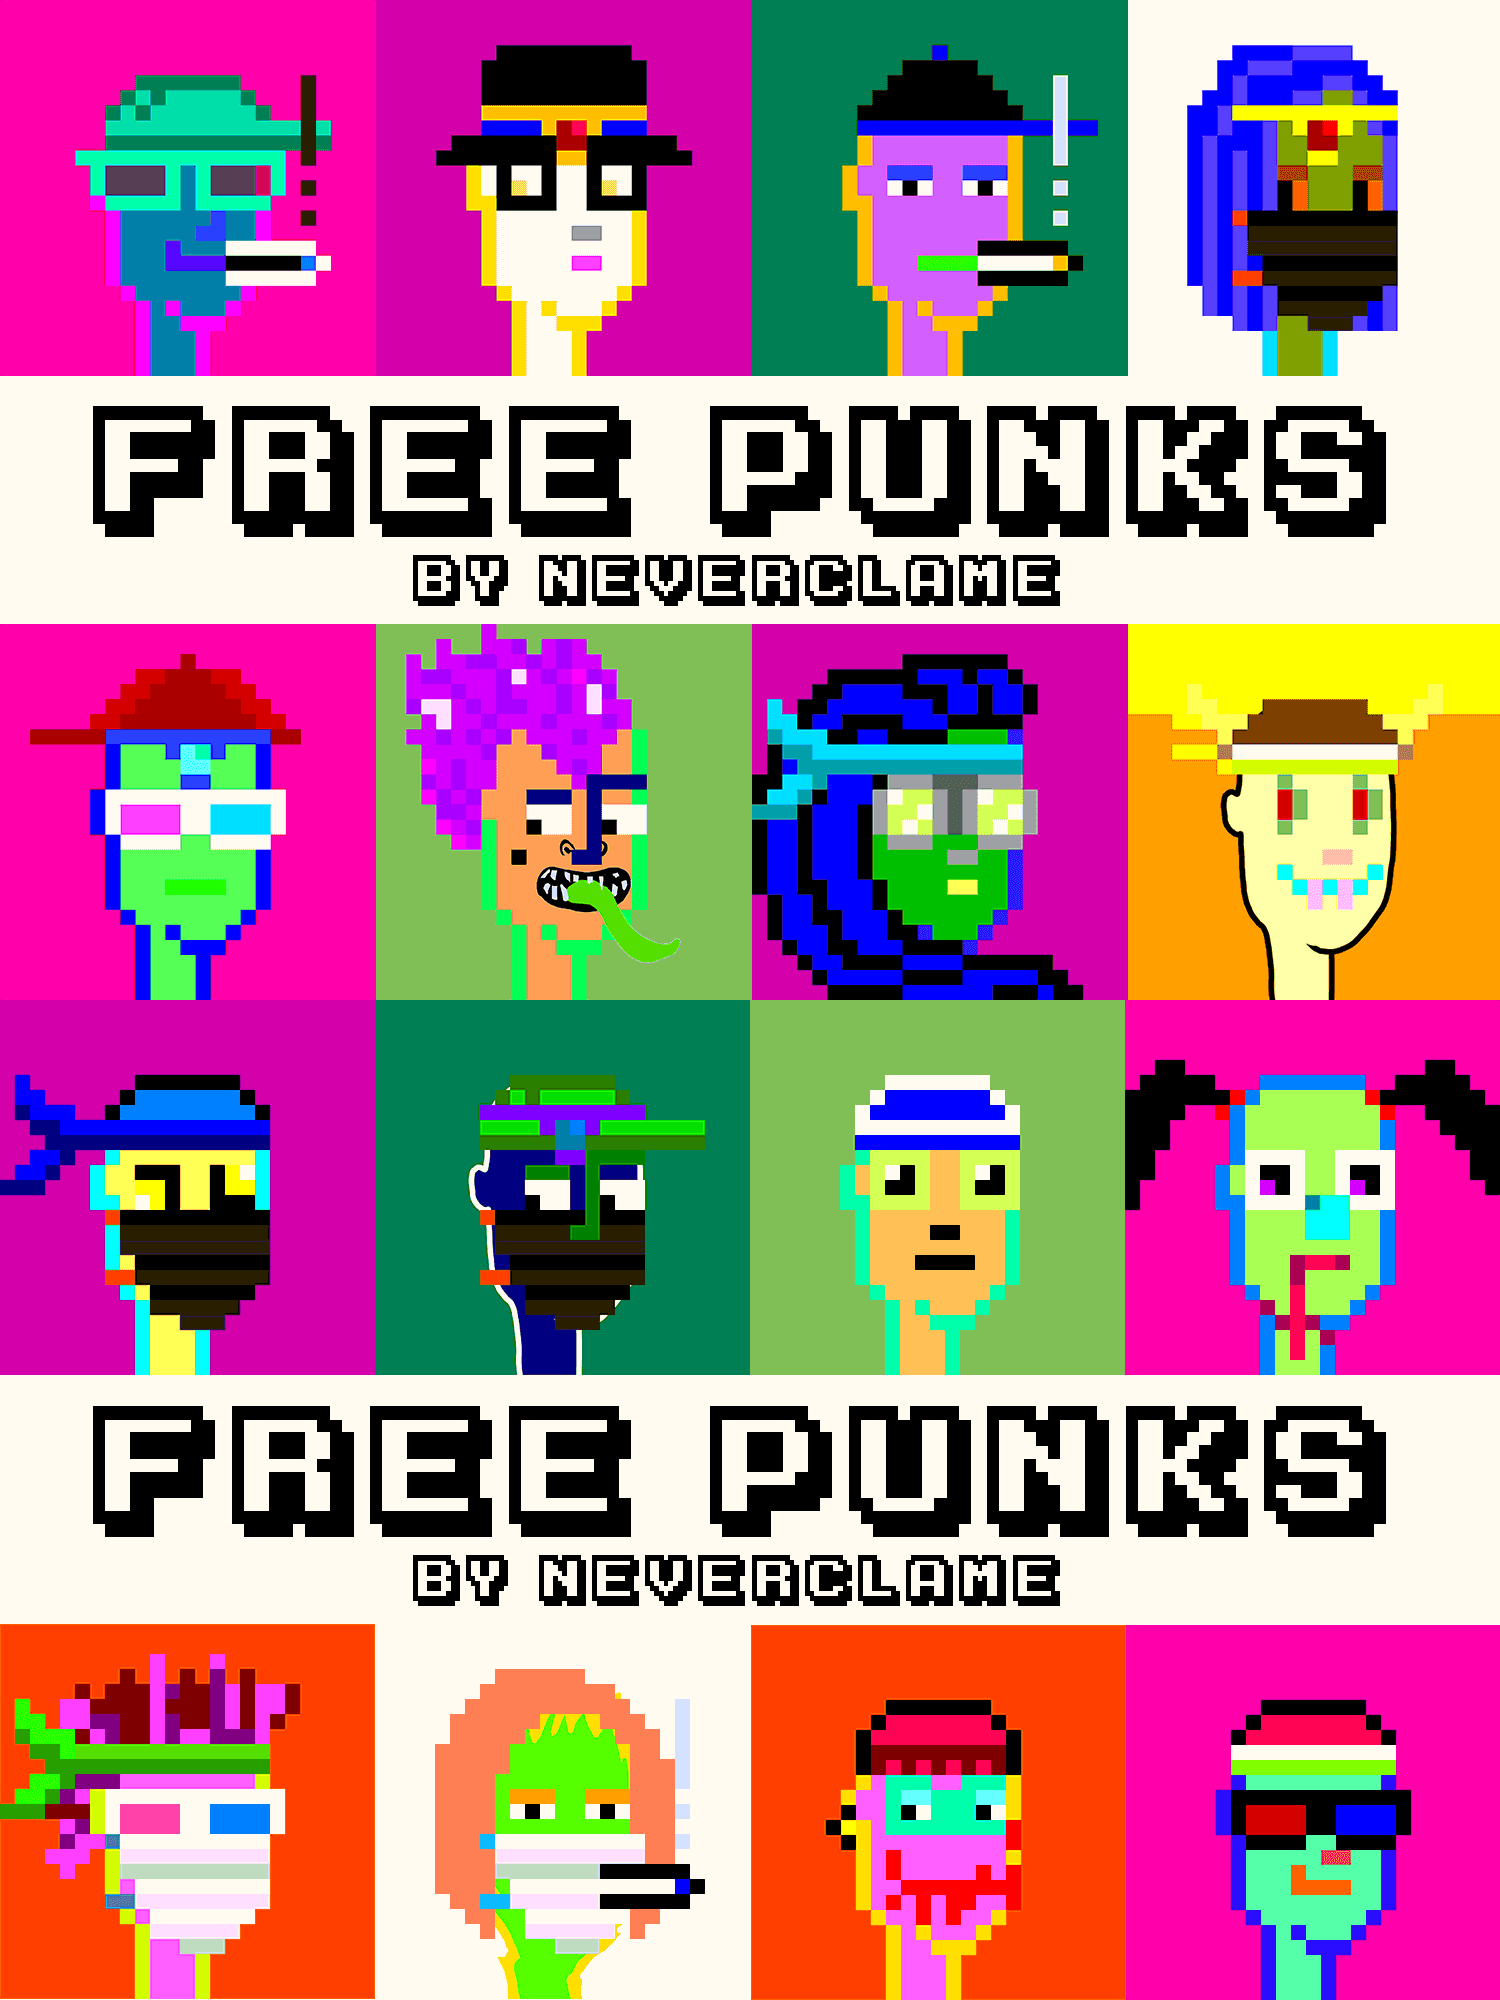 FreePunks